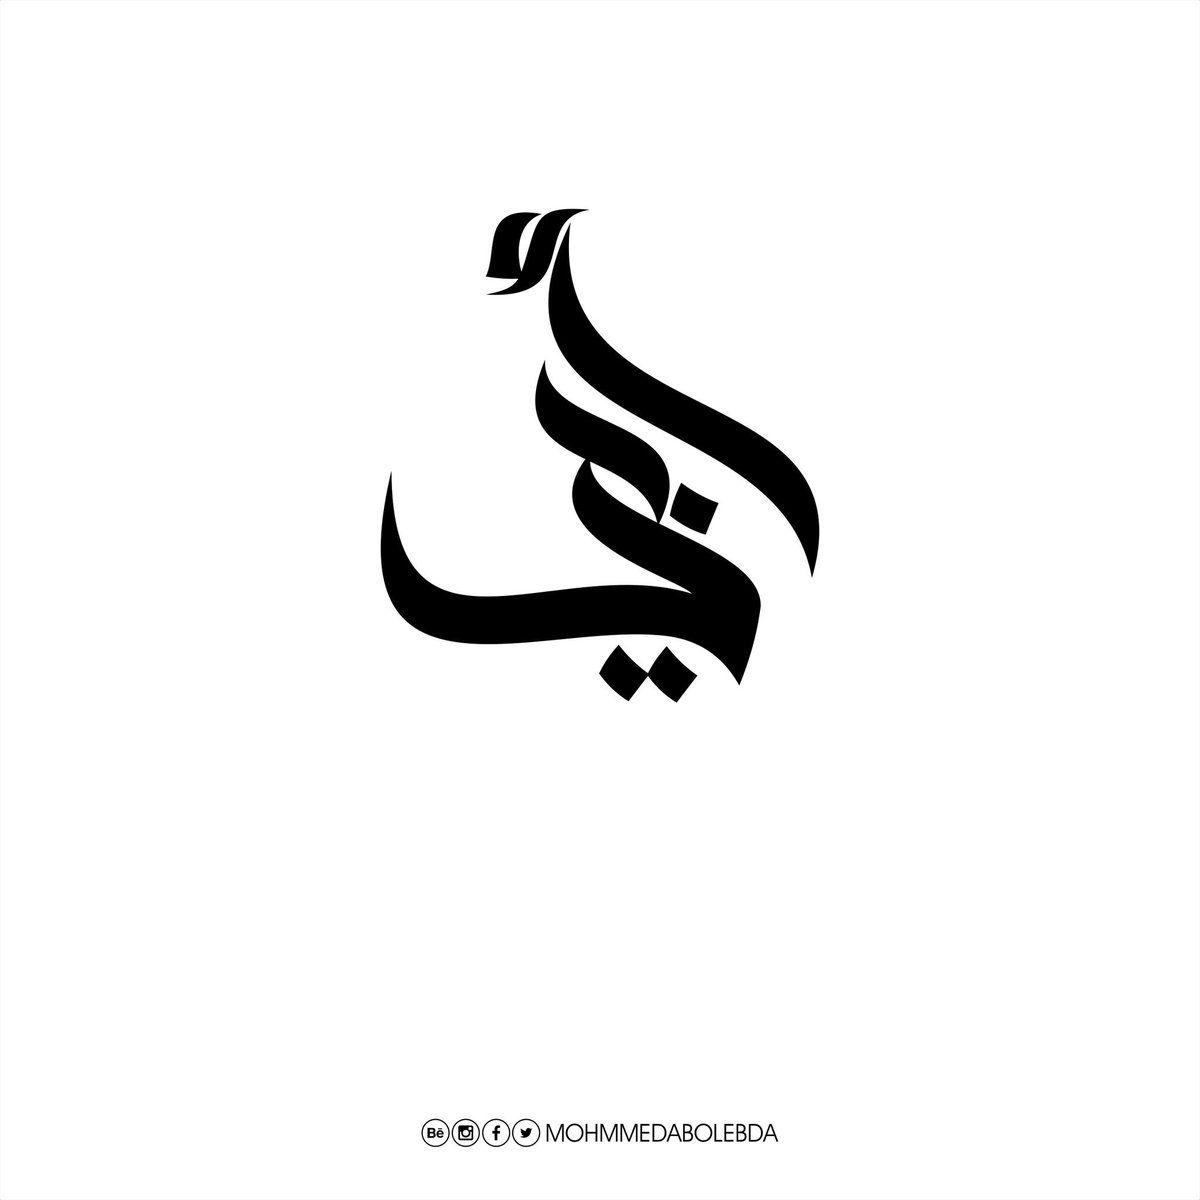 Modern Twitter Logo - Mohammed Abo Lebda on Twitter: 